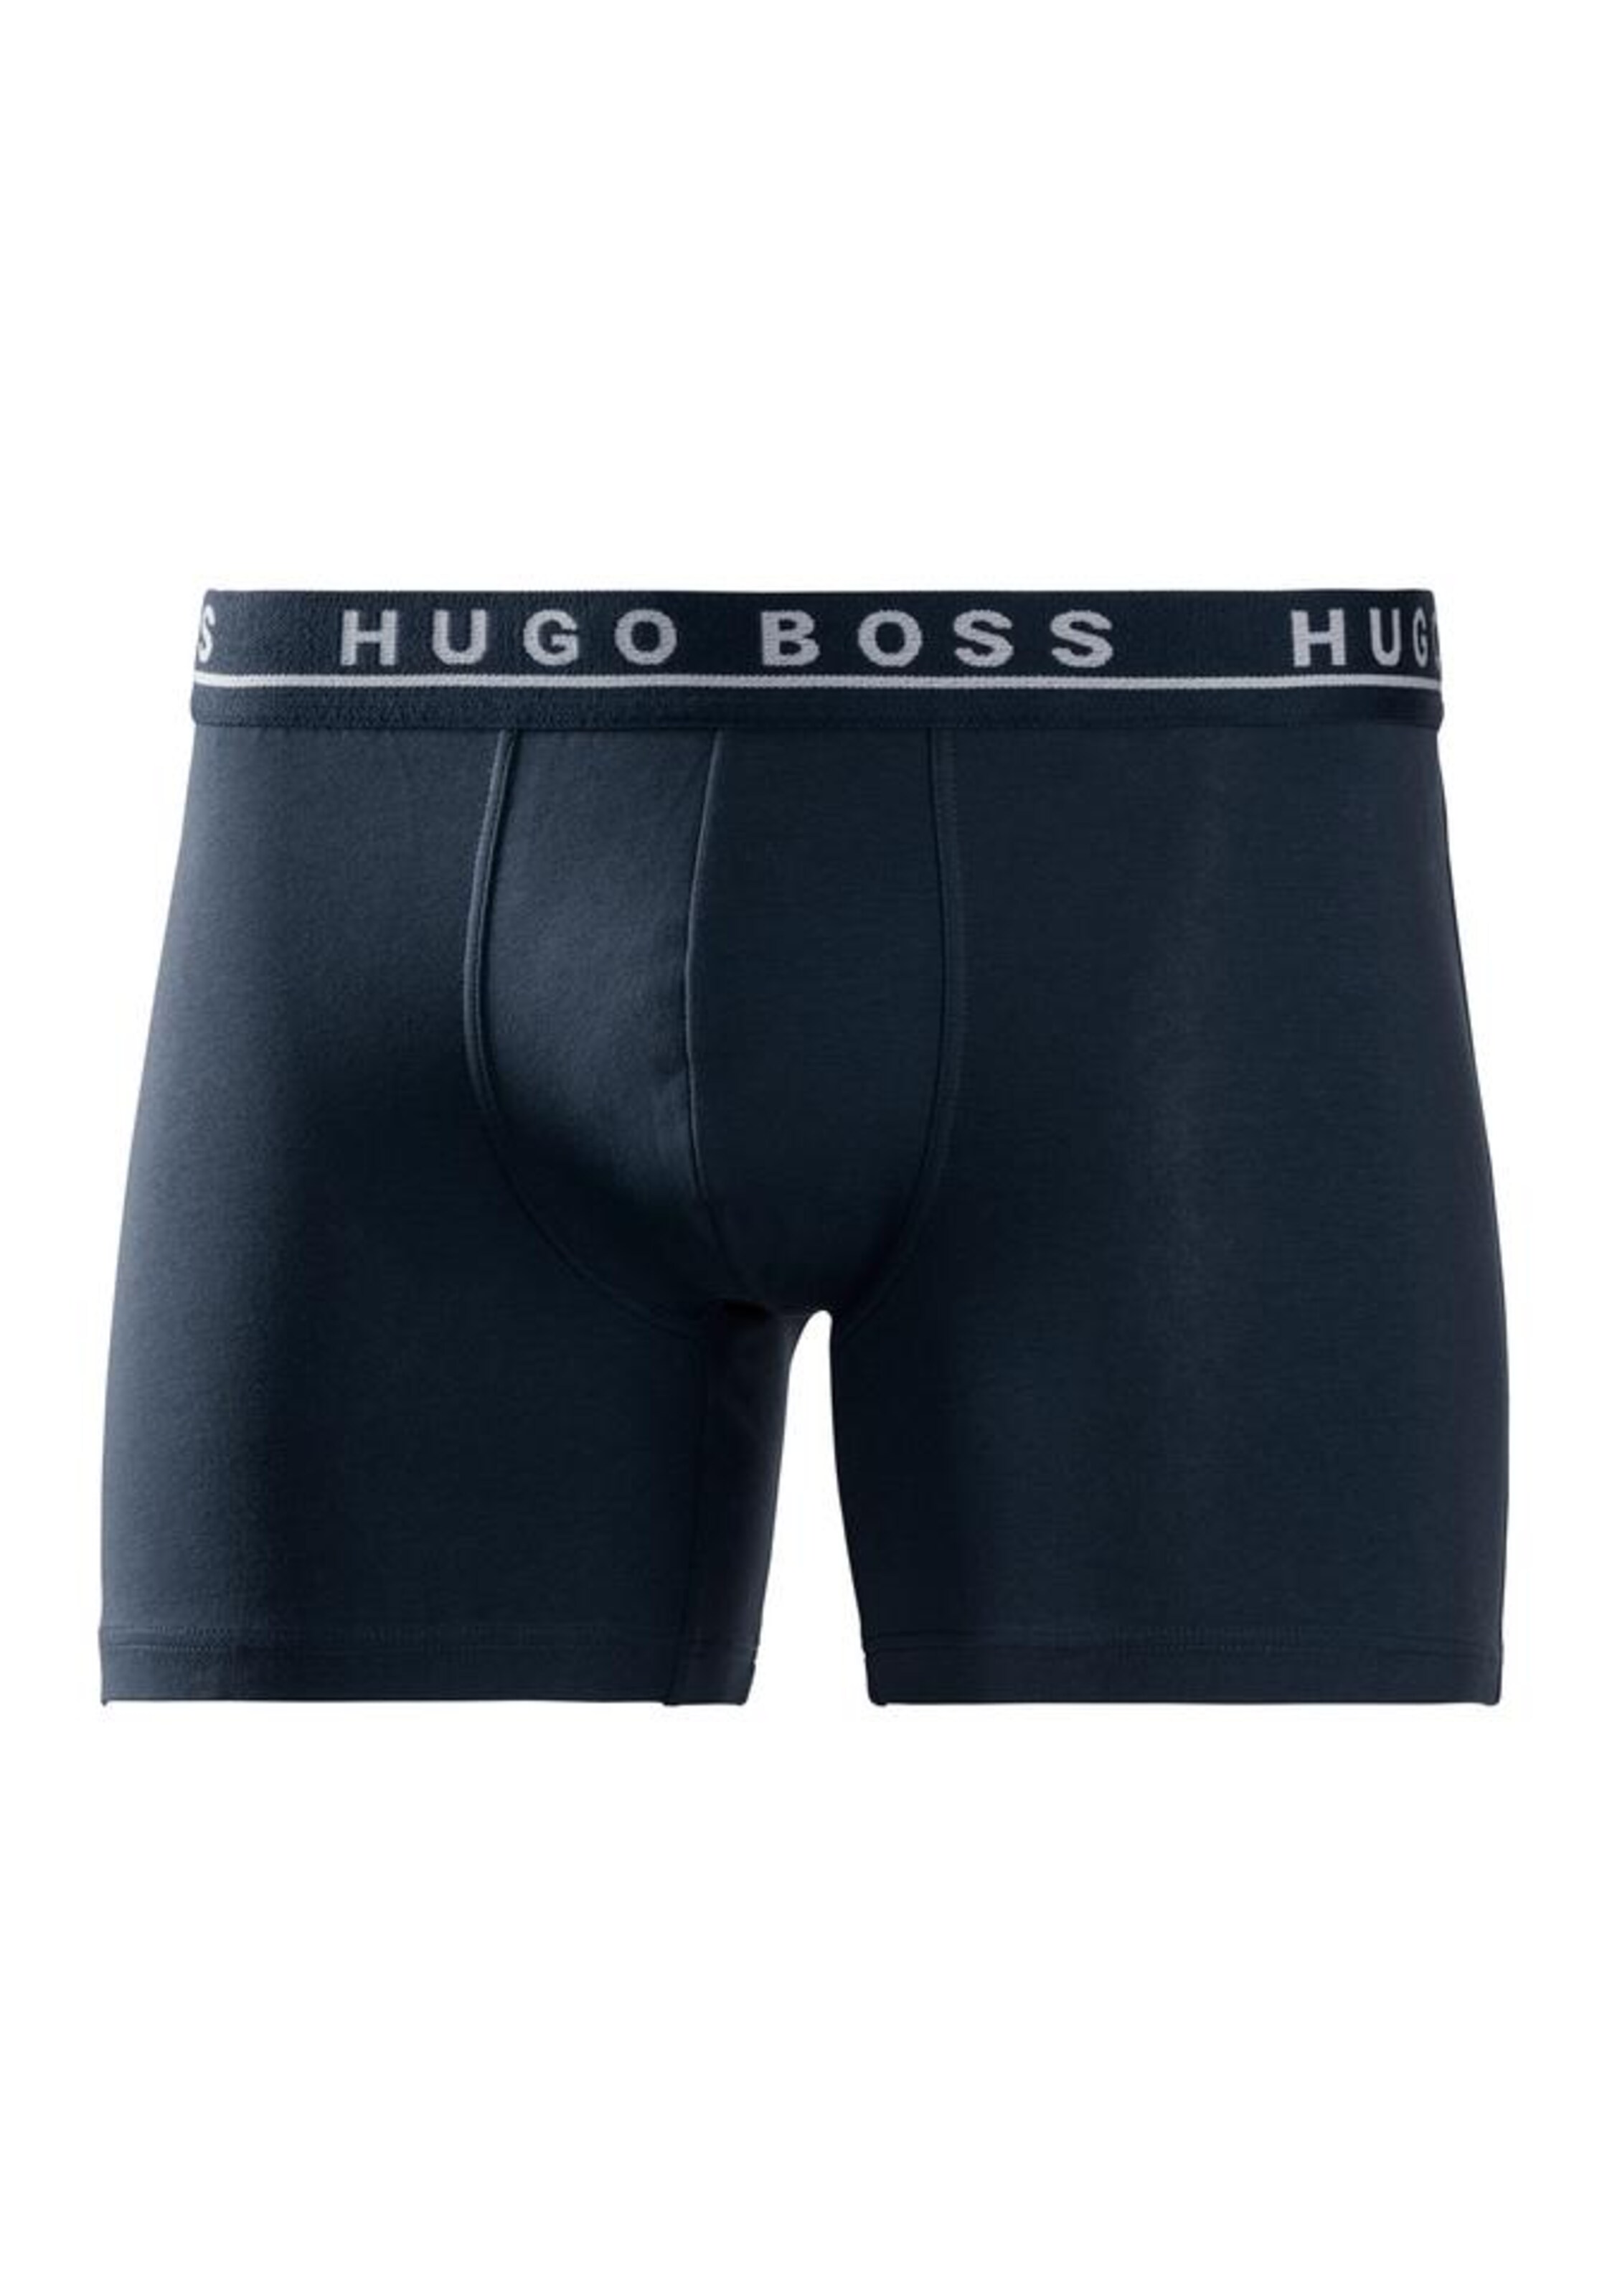 Männer Wäsche BOSS Black Boxershorts in Indigo, Nachtblau, Dunkelgrau - TJ12459